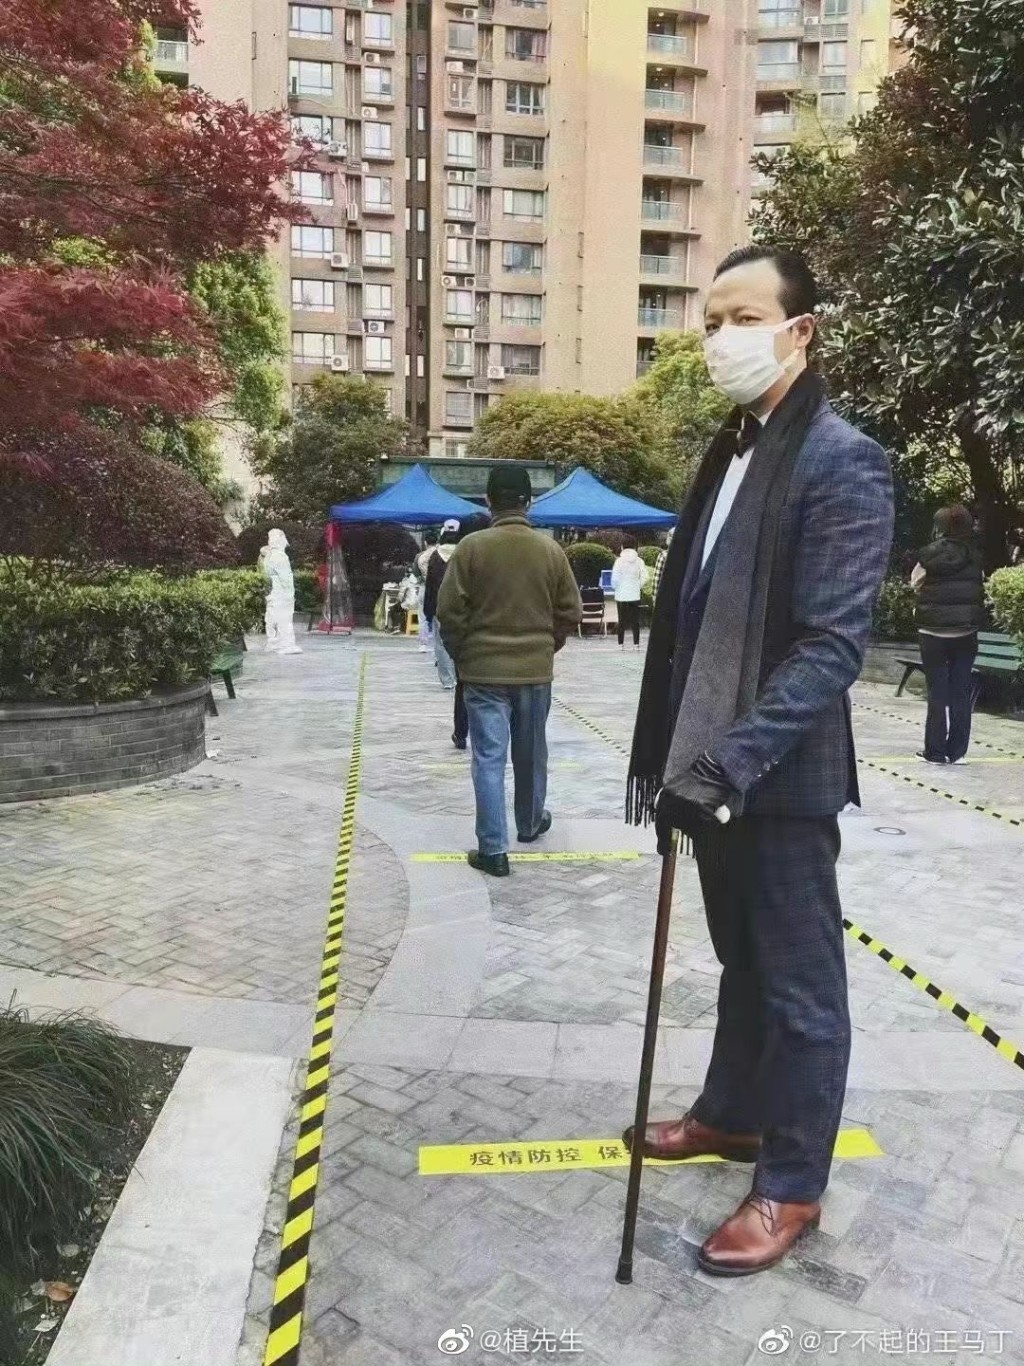 上海大叔西装加颈巾，悉心打扮去做核酸检测。